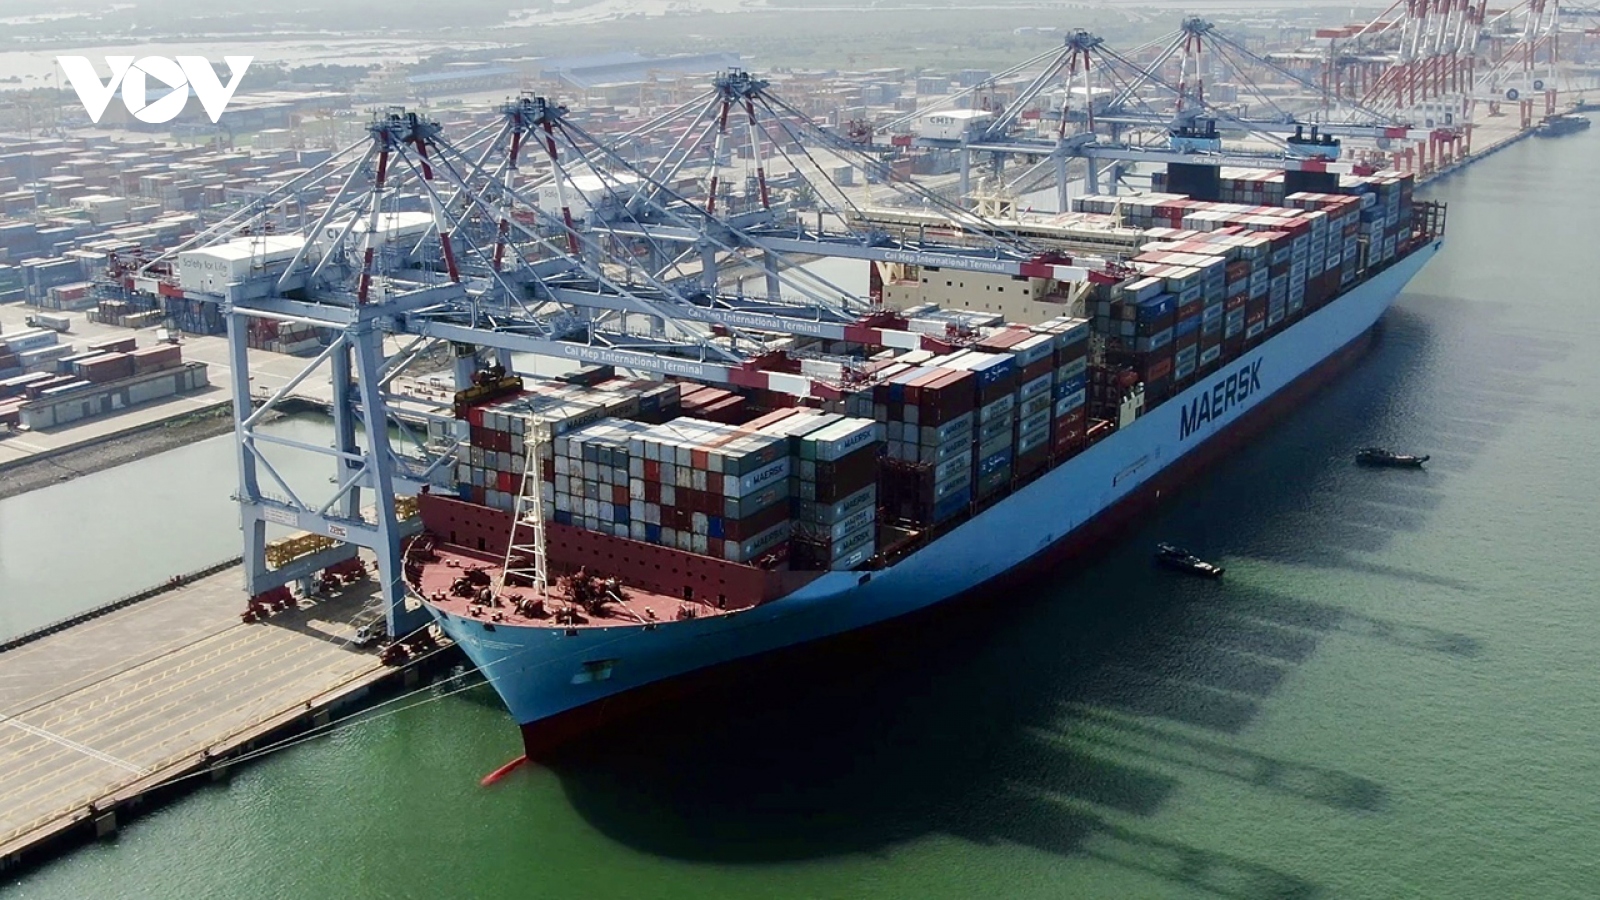 Cước vận tải biển tăng cao, Bộ Công thương khuyến nghị giải pháp